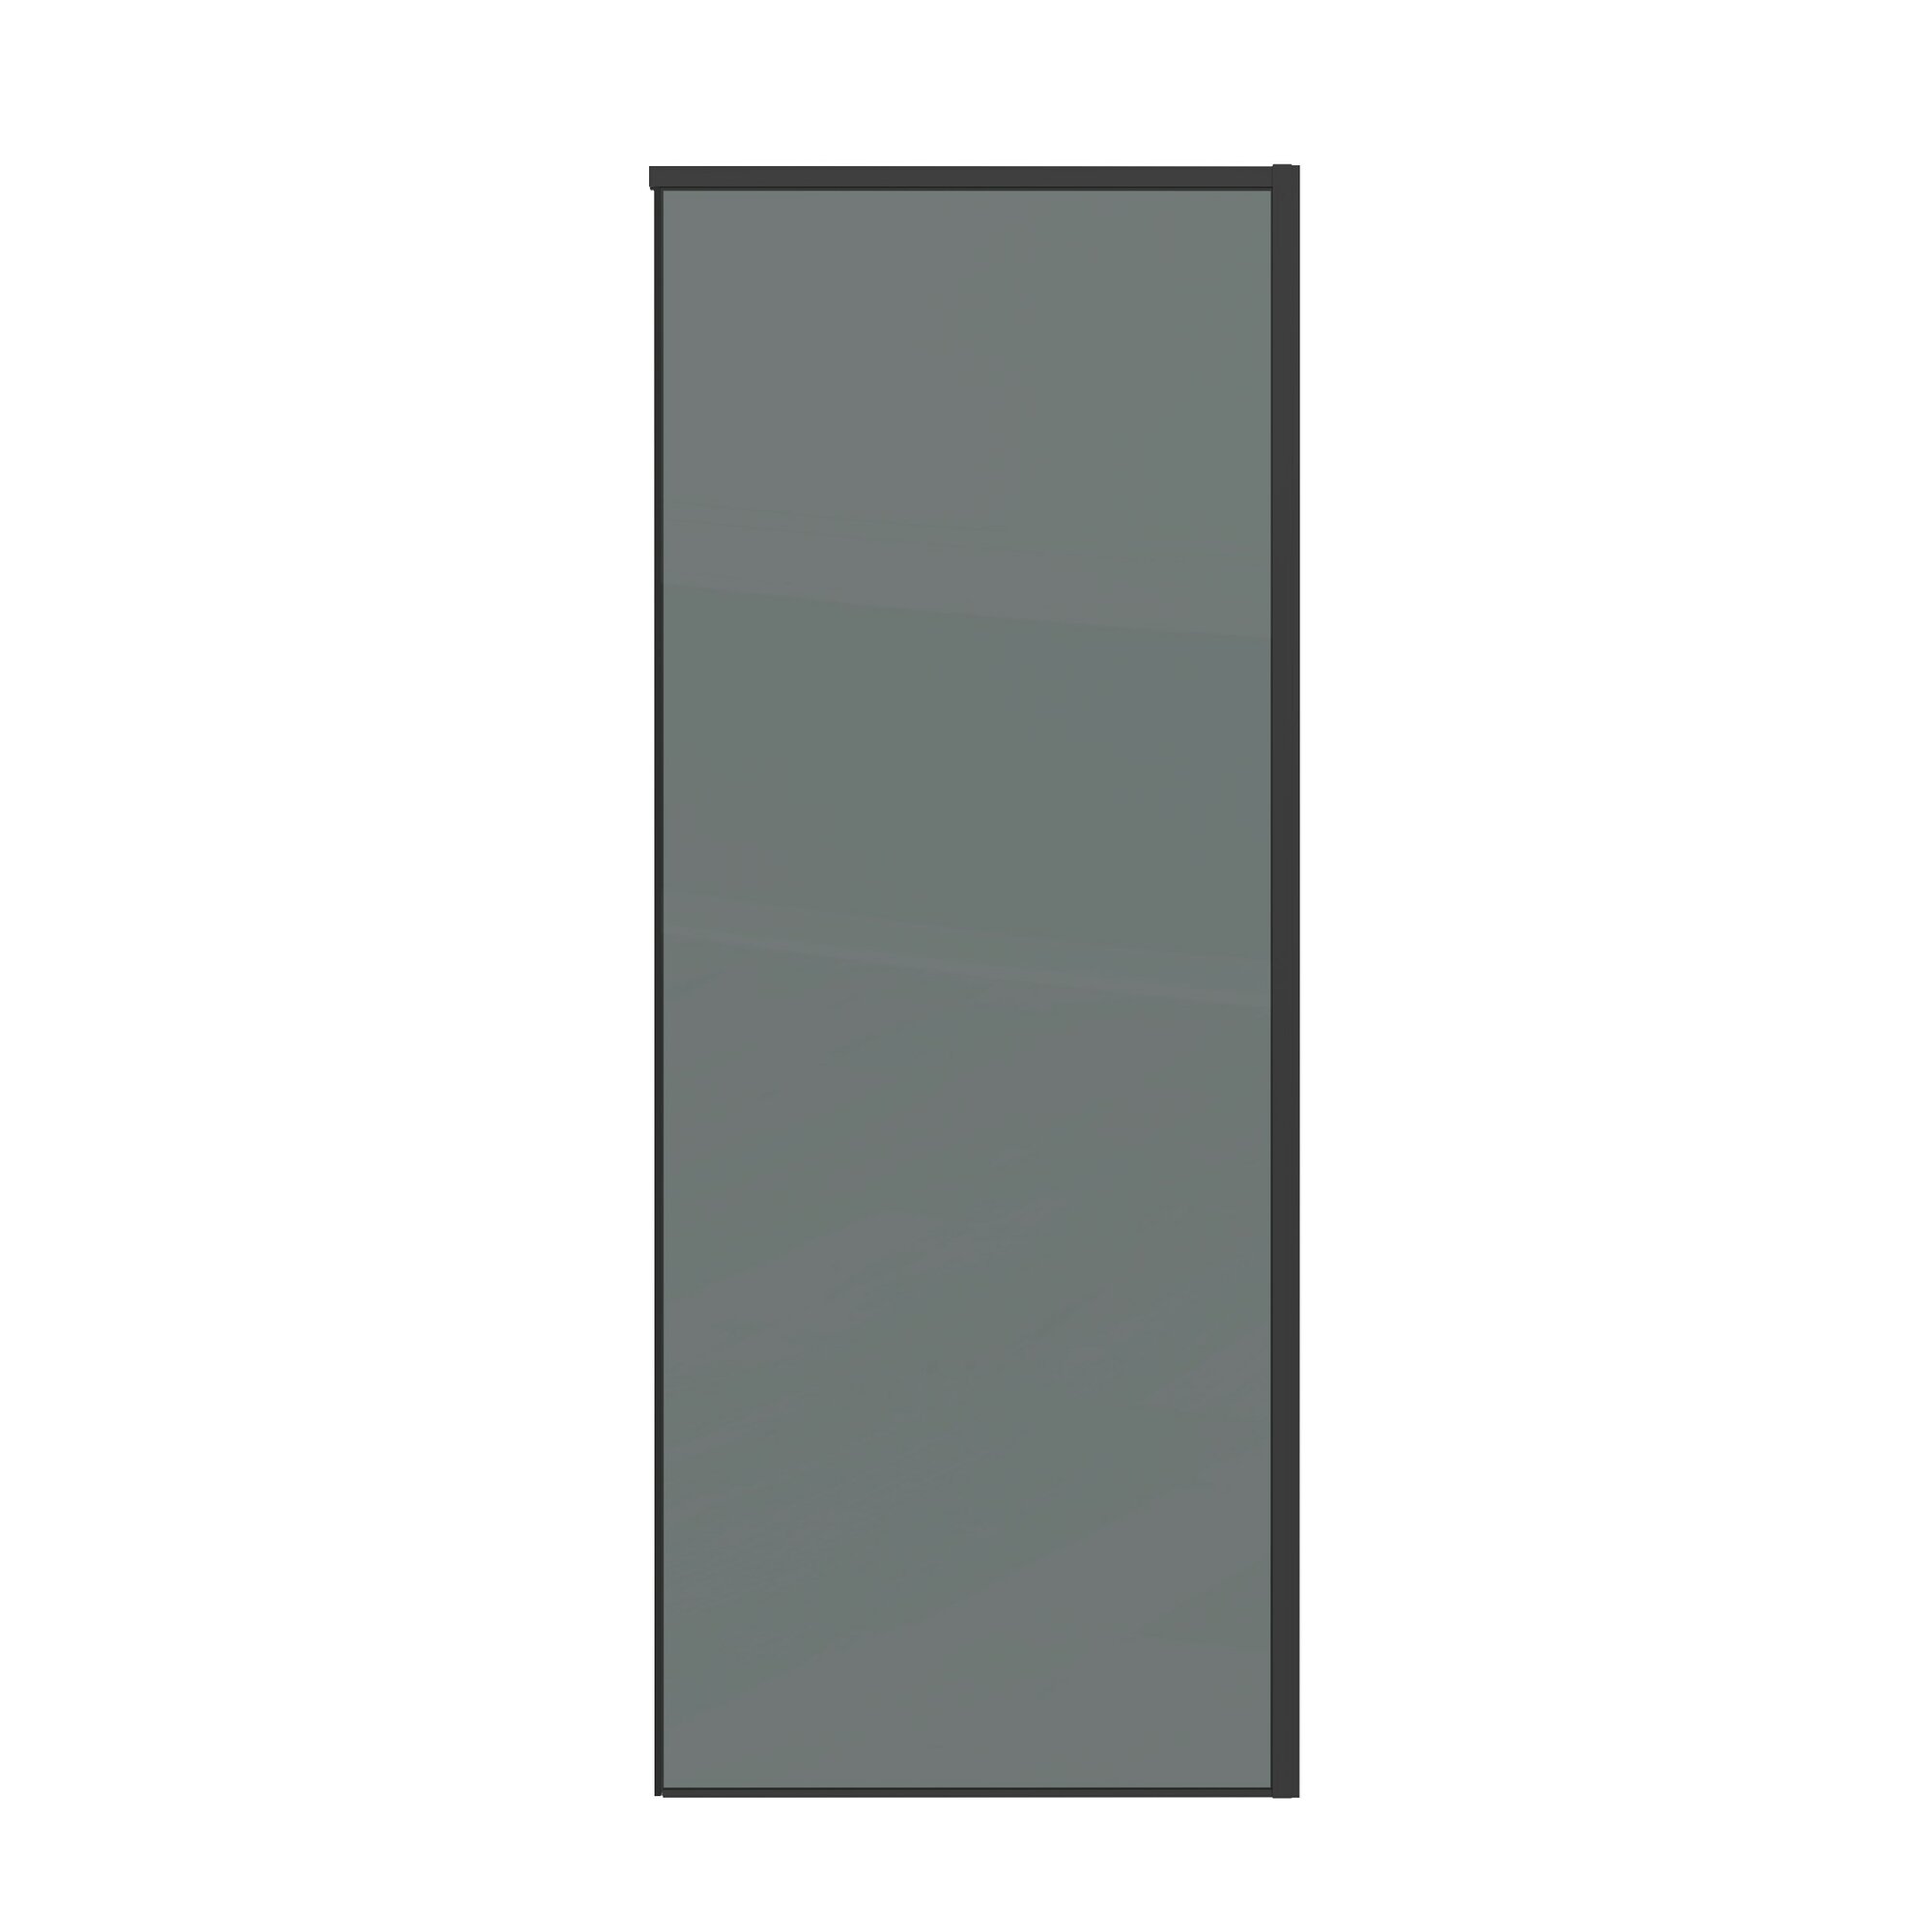 Боковая стенка Grossman Galaxy 70x195 200. K33.01.70.21.10 стекло тонированное, профиль черный матовый